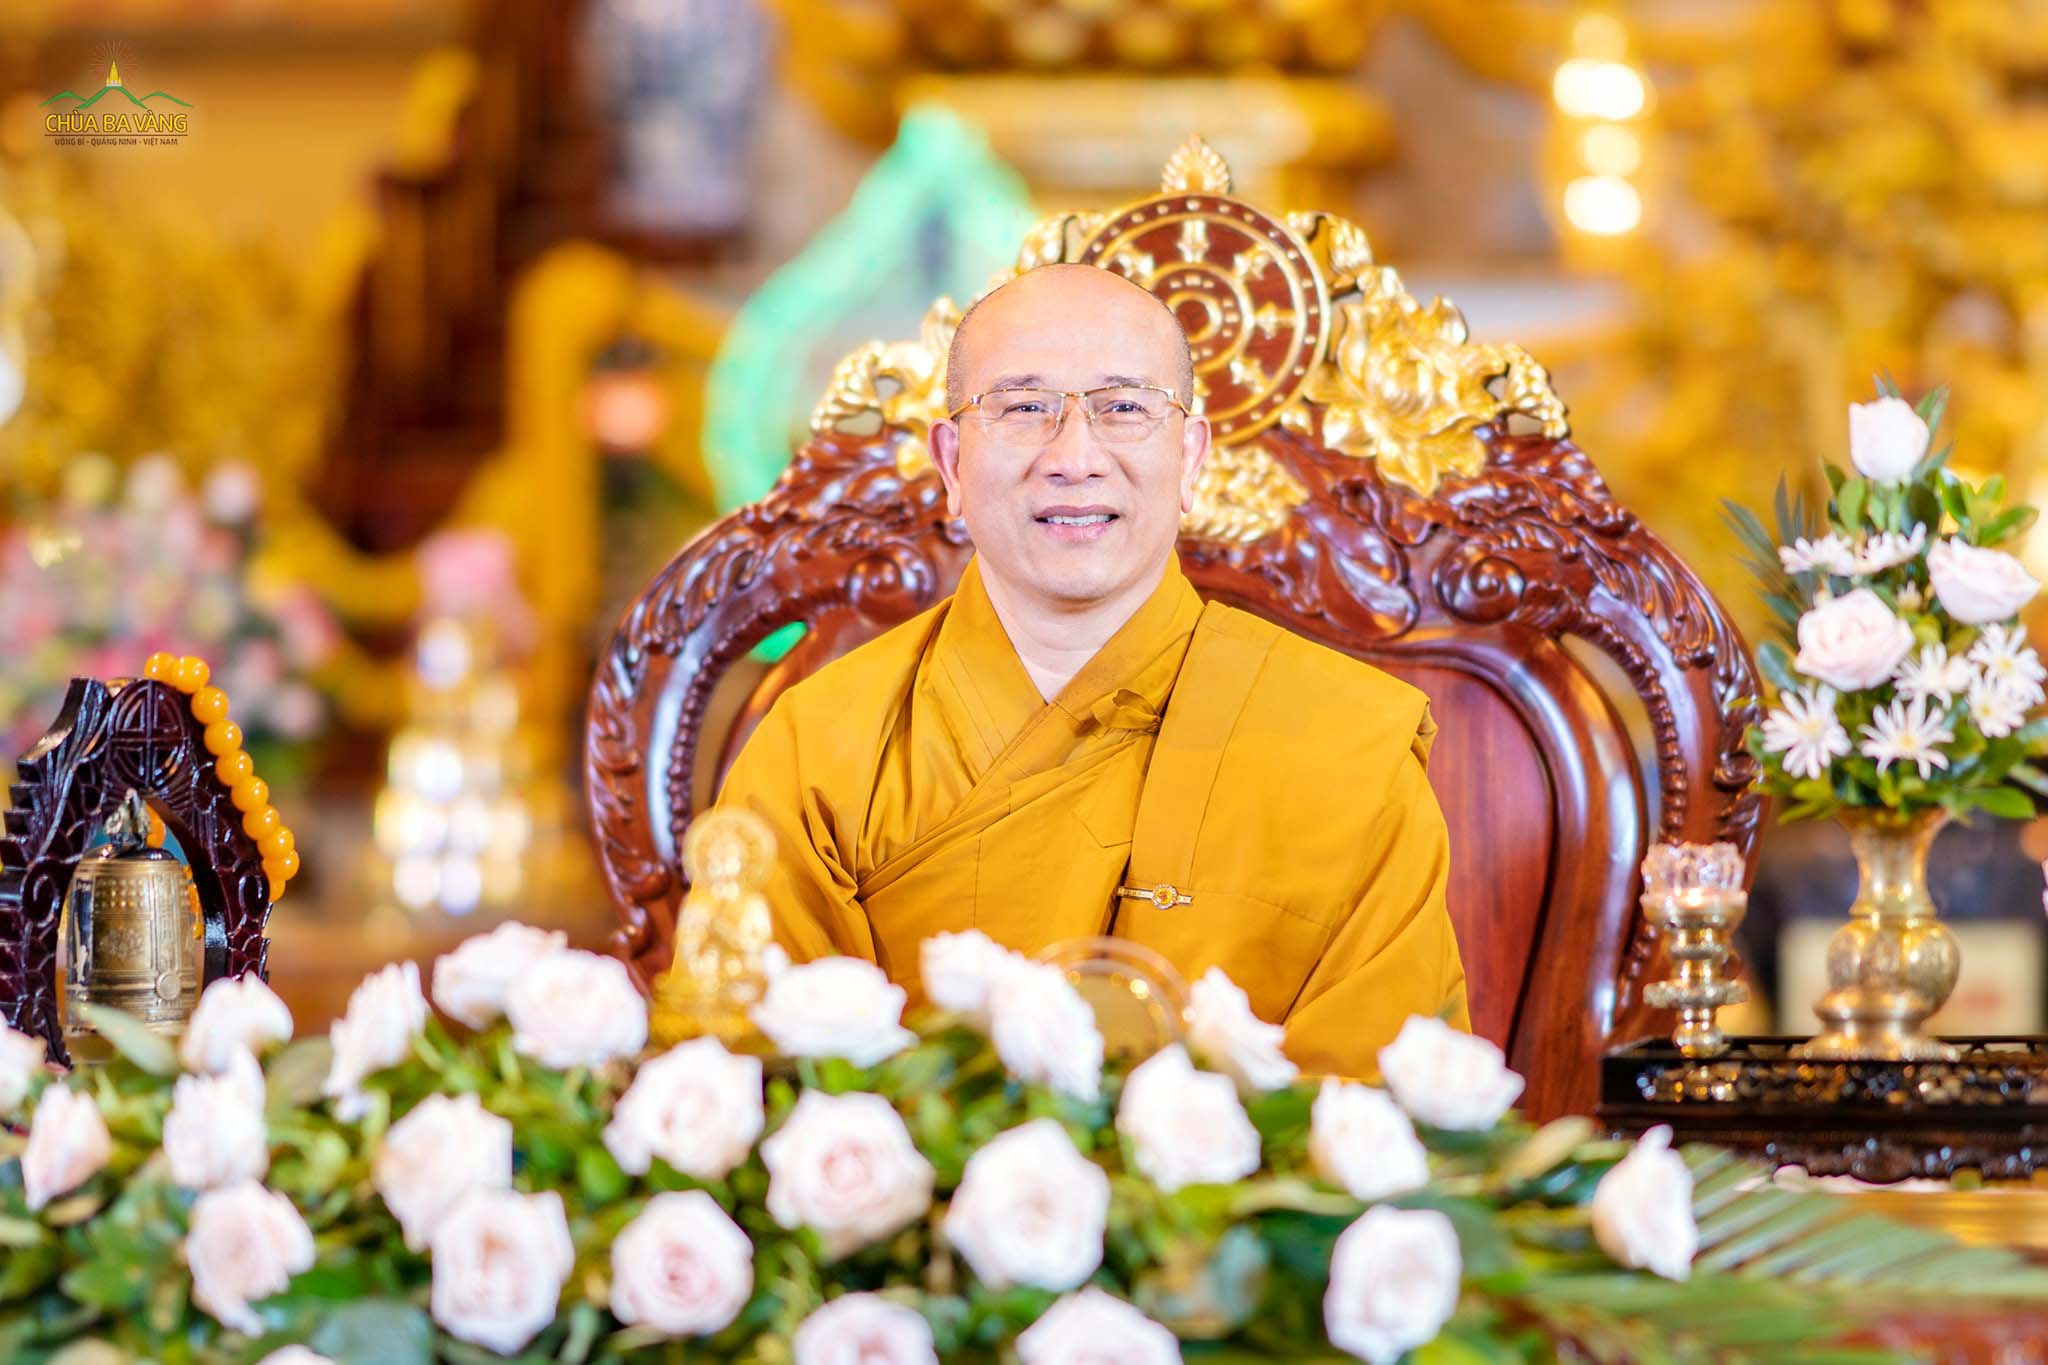 Sư Phụ Thích Trúc Thái Minh quang lâm Chính điện, tham dự và chứng minh buổi thành lập đạo tràng Phật Tử Xa Xứ